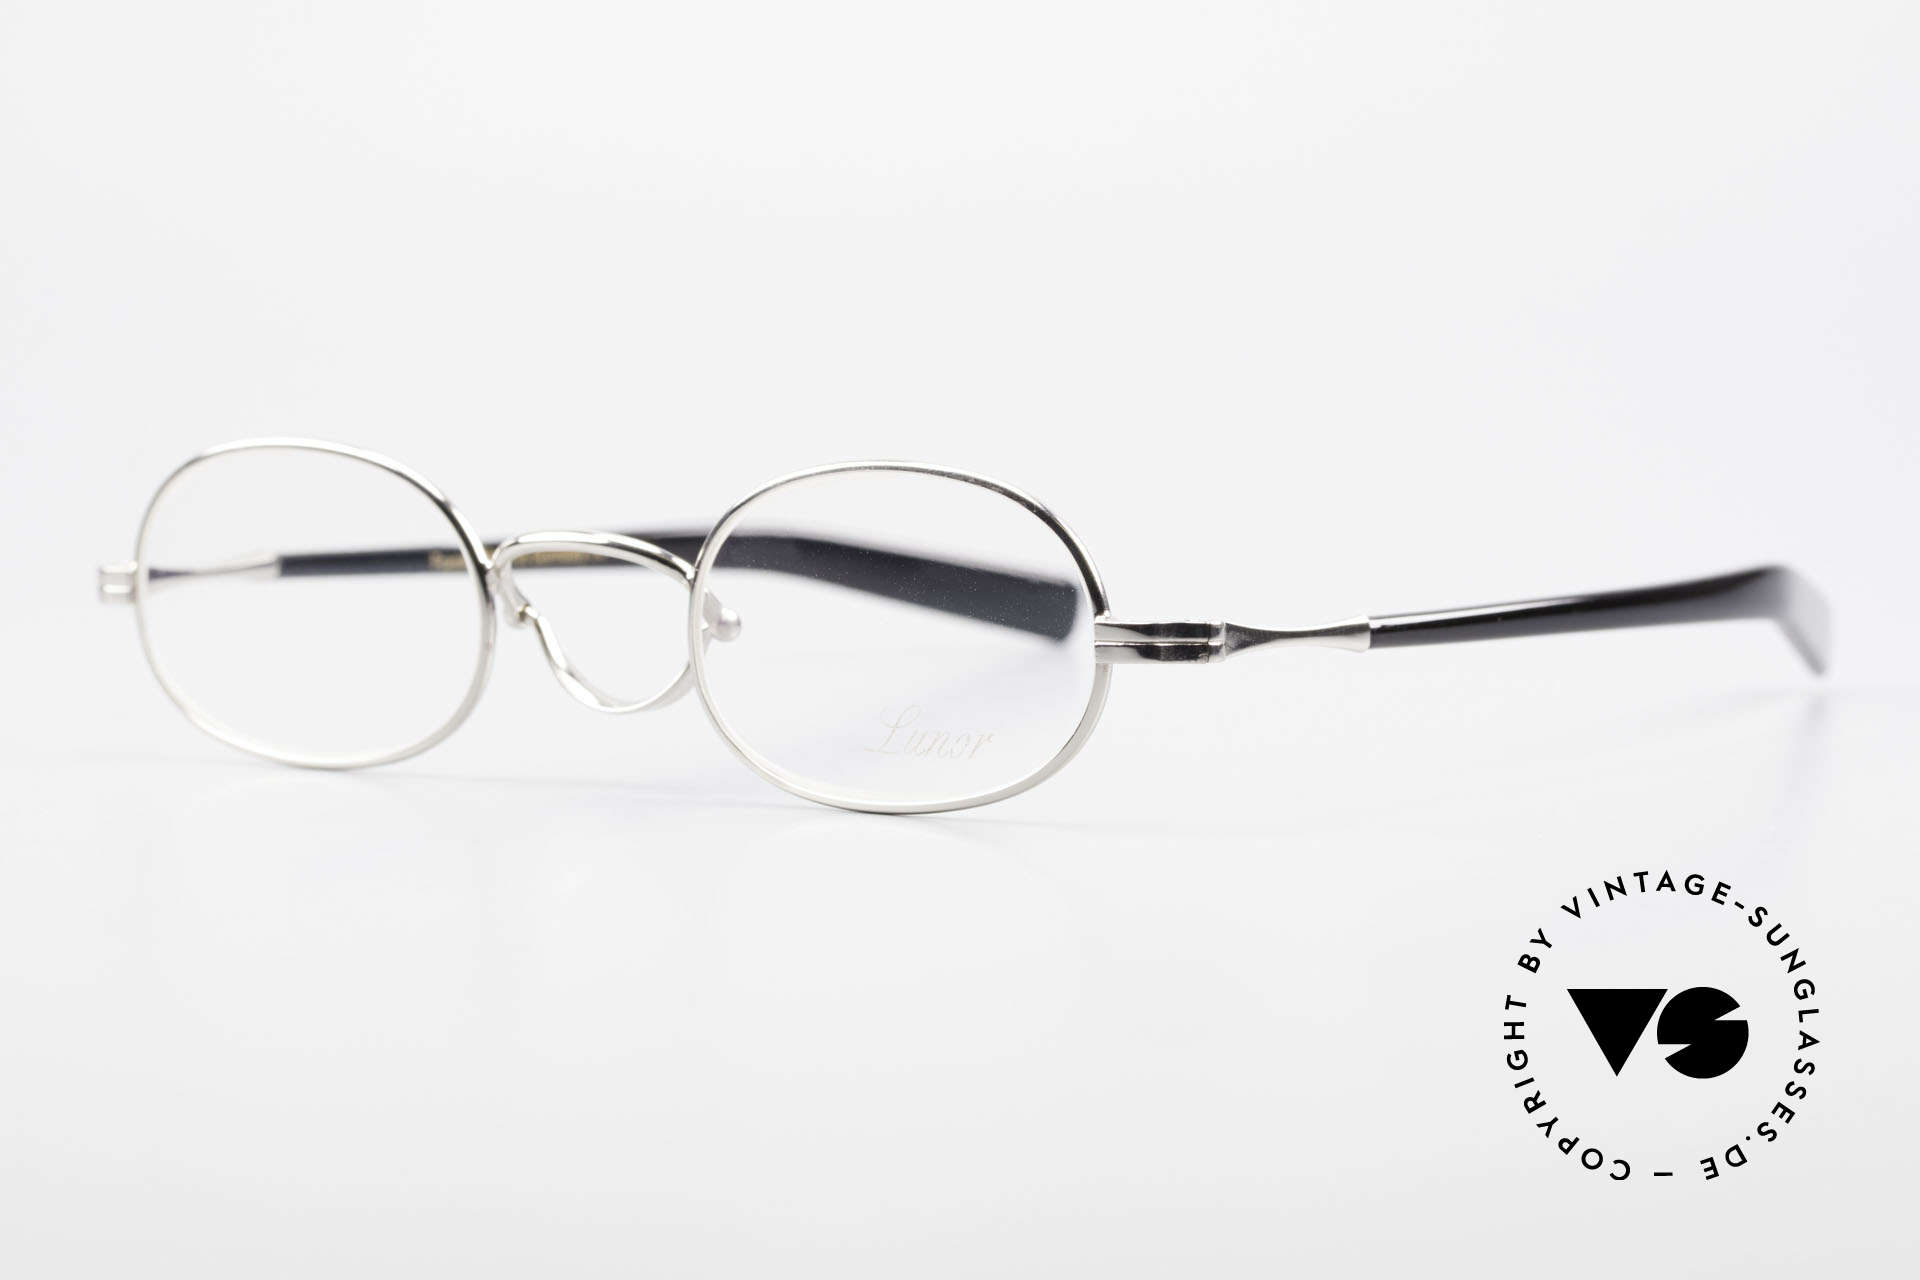 Lunor Swing A 36 Oval Vintage Brille Mit Schwenksteg, bekannt für den W-Steg und die schlichten Formen, Passend für Herren und Damen